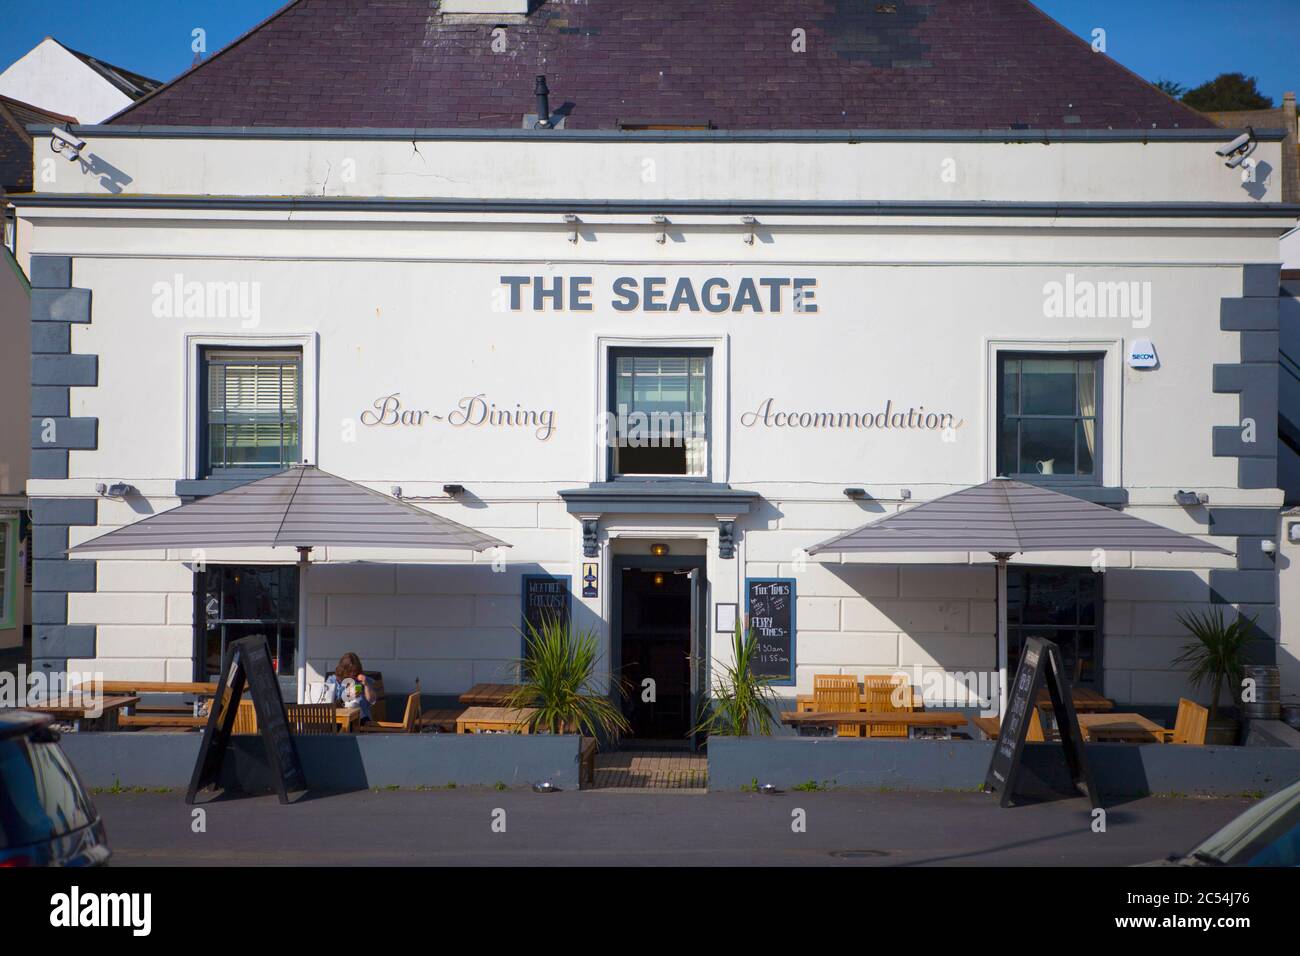 The Seagate pub and hotel, Appledore, North Devon, England Stock Photo